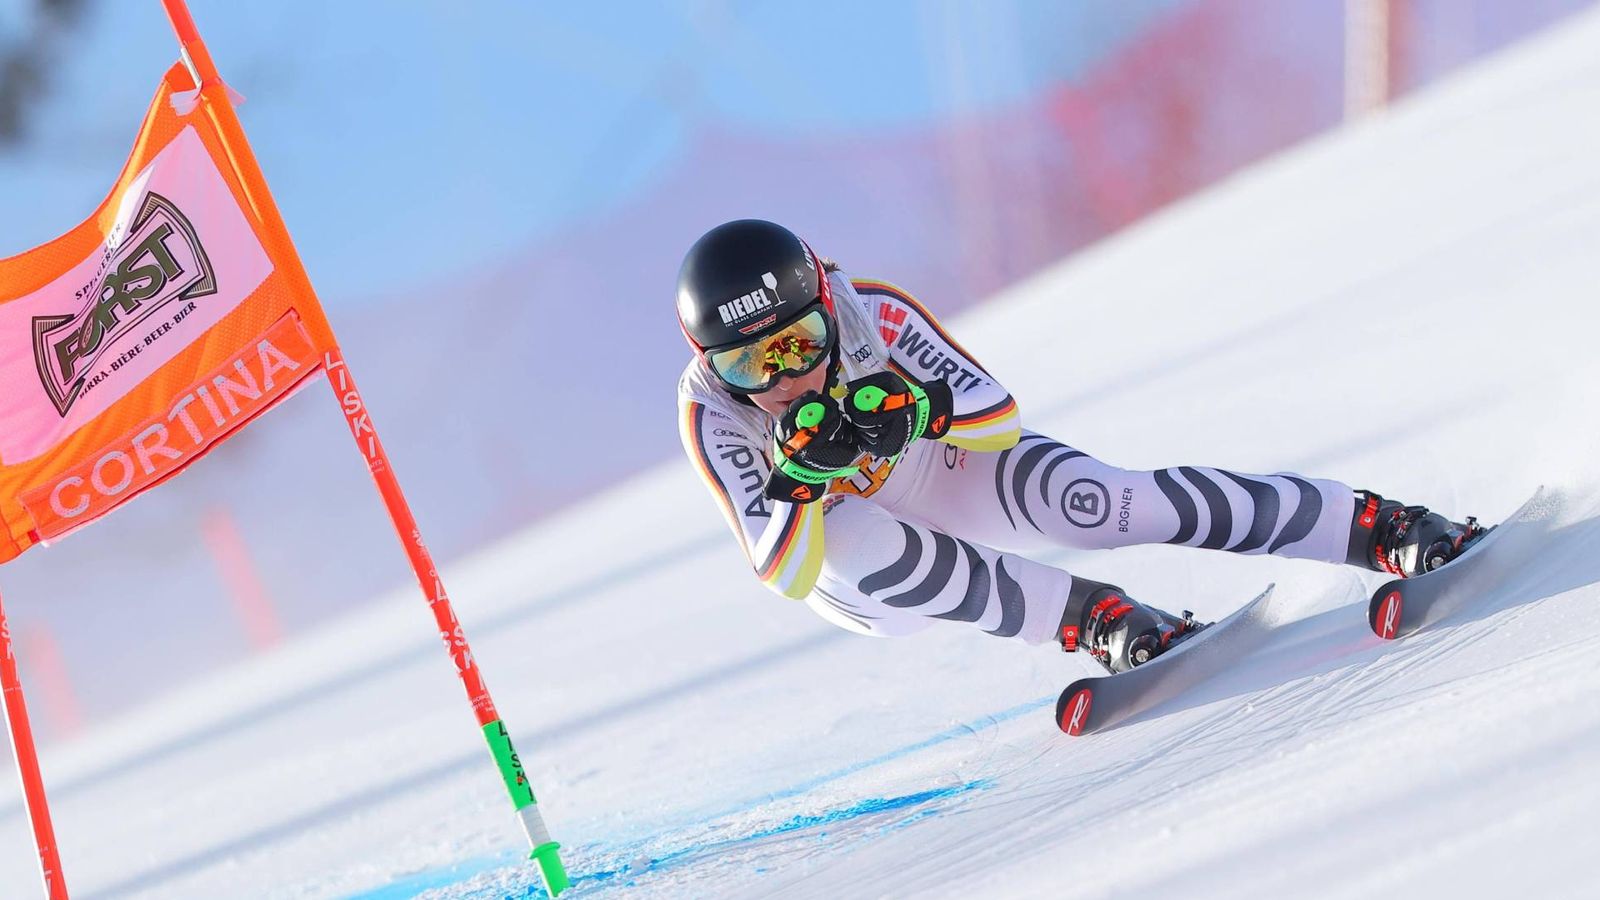 Sport invernali: Kira Weidle è arrivata solo 15esima nella seconda discesa a Cortina d’Ampezzo |  Notizie sugli sport invernali